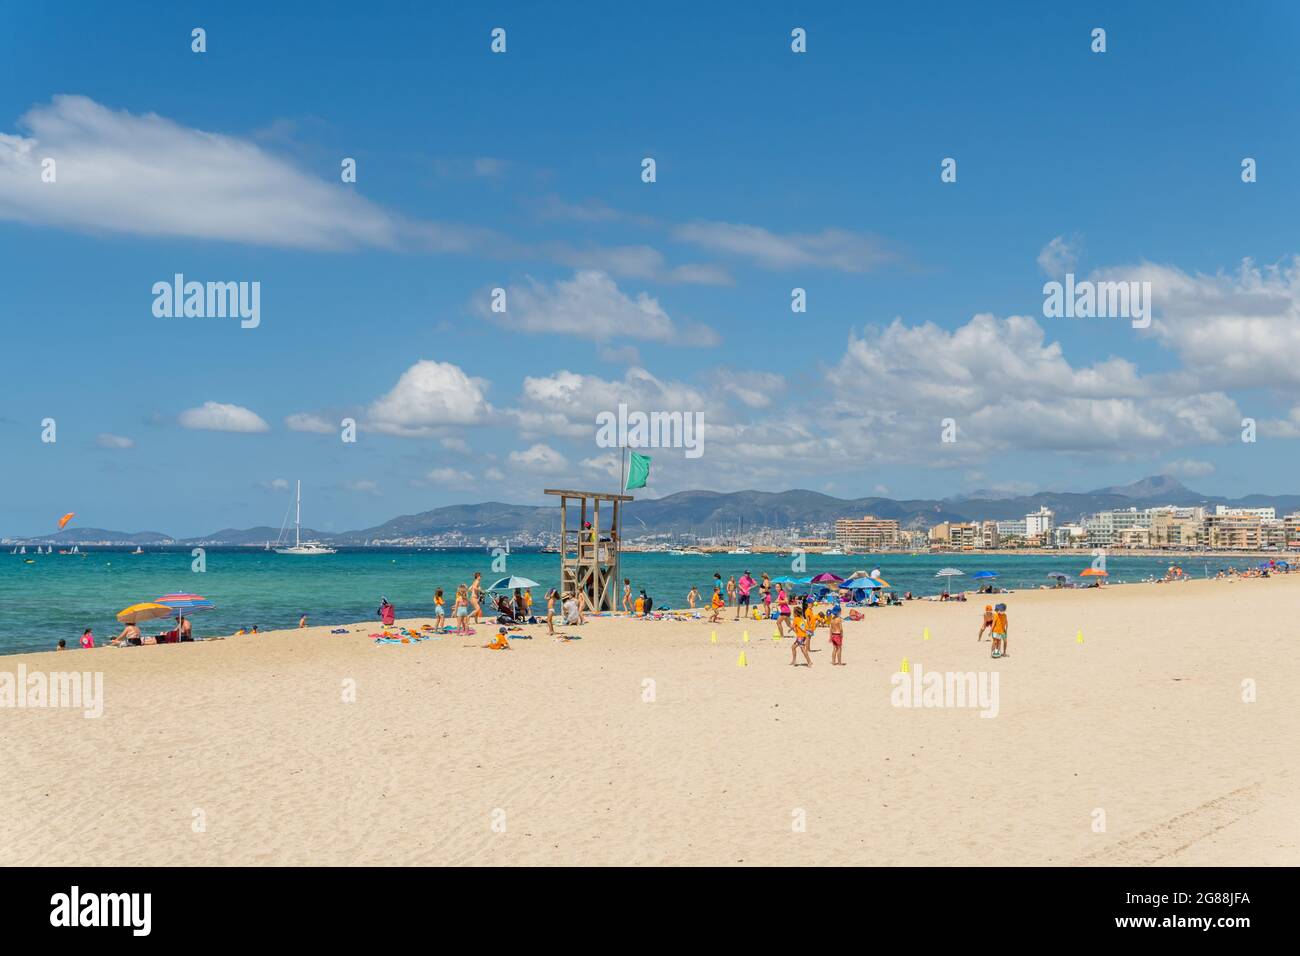 Platja de Palma, Spanien; 16 2021. juli: Allgemeine Ansicht des Strandes von Palma de Mallorca an einem sonnigen Sommertag, mit Touristen an seinen Stränden nach dem Cov Stockfoto